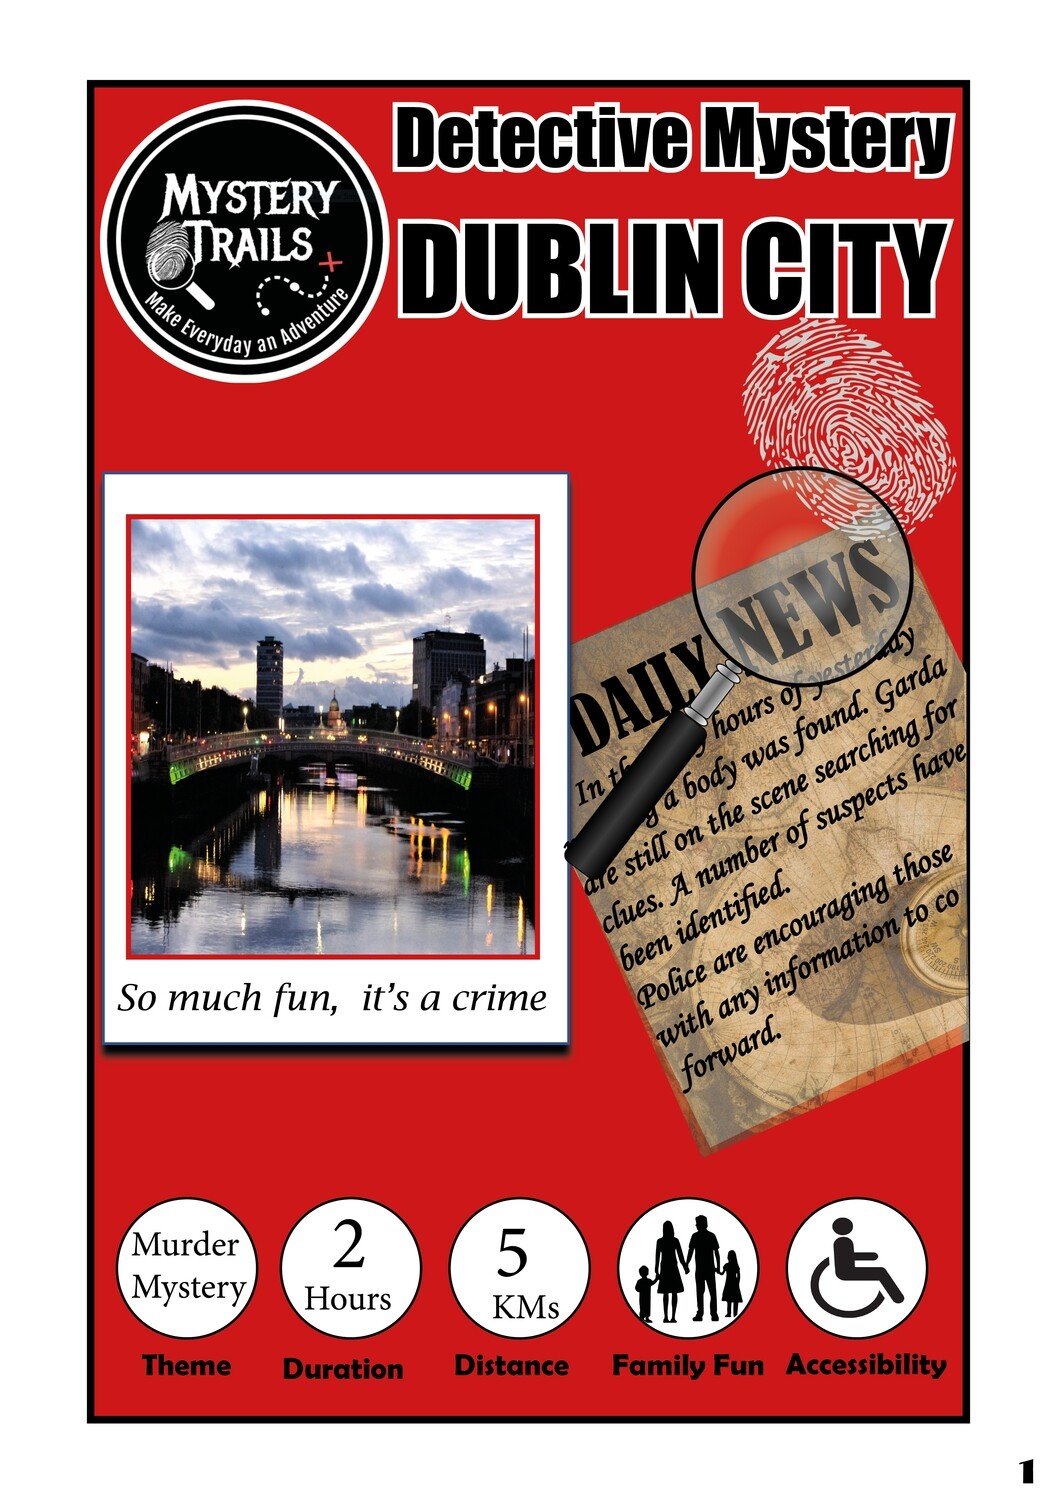 Dublin City- Detective Mystery